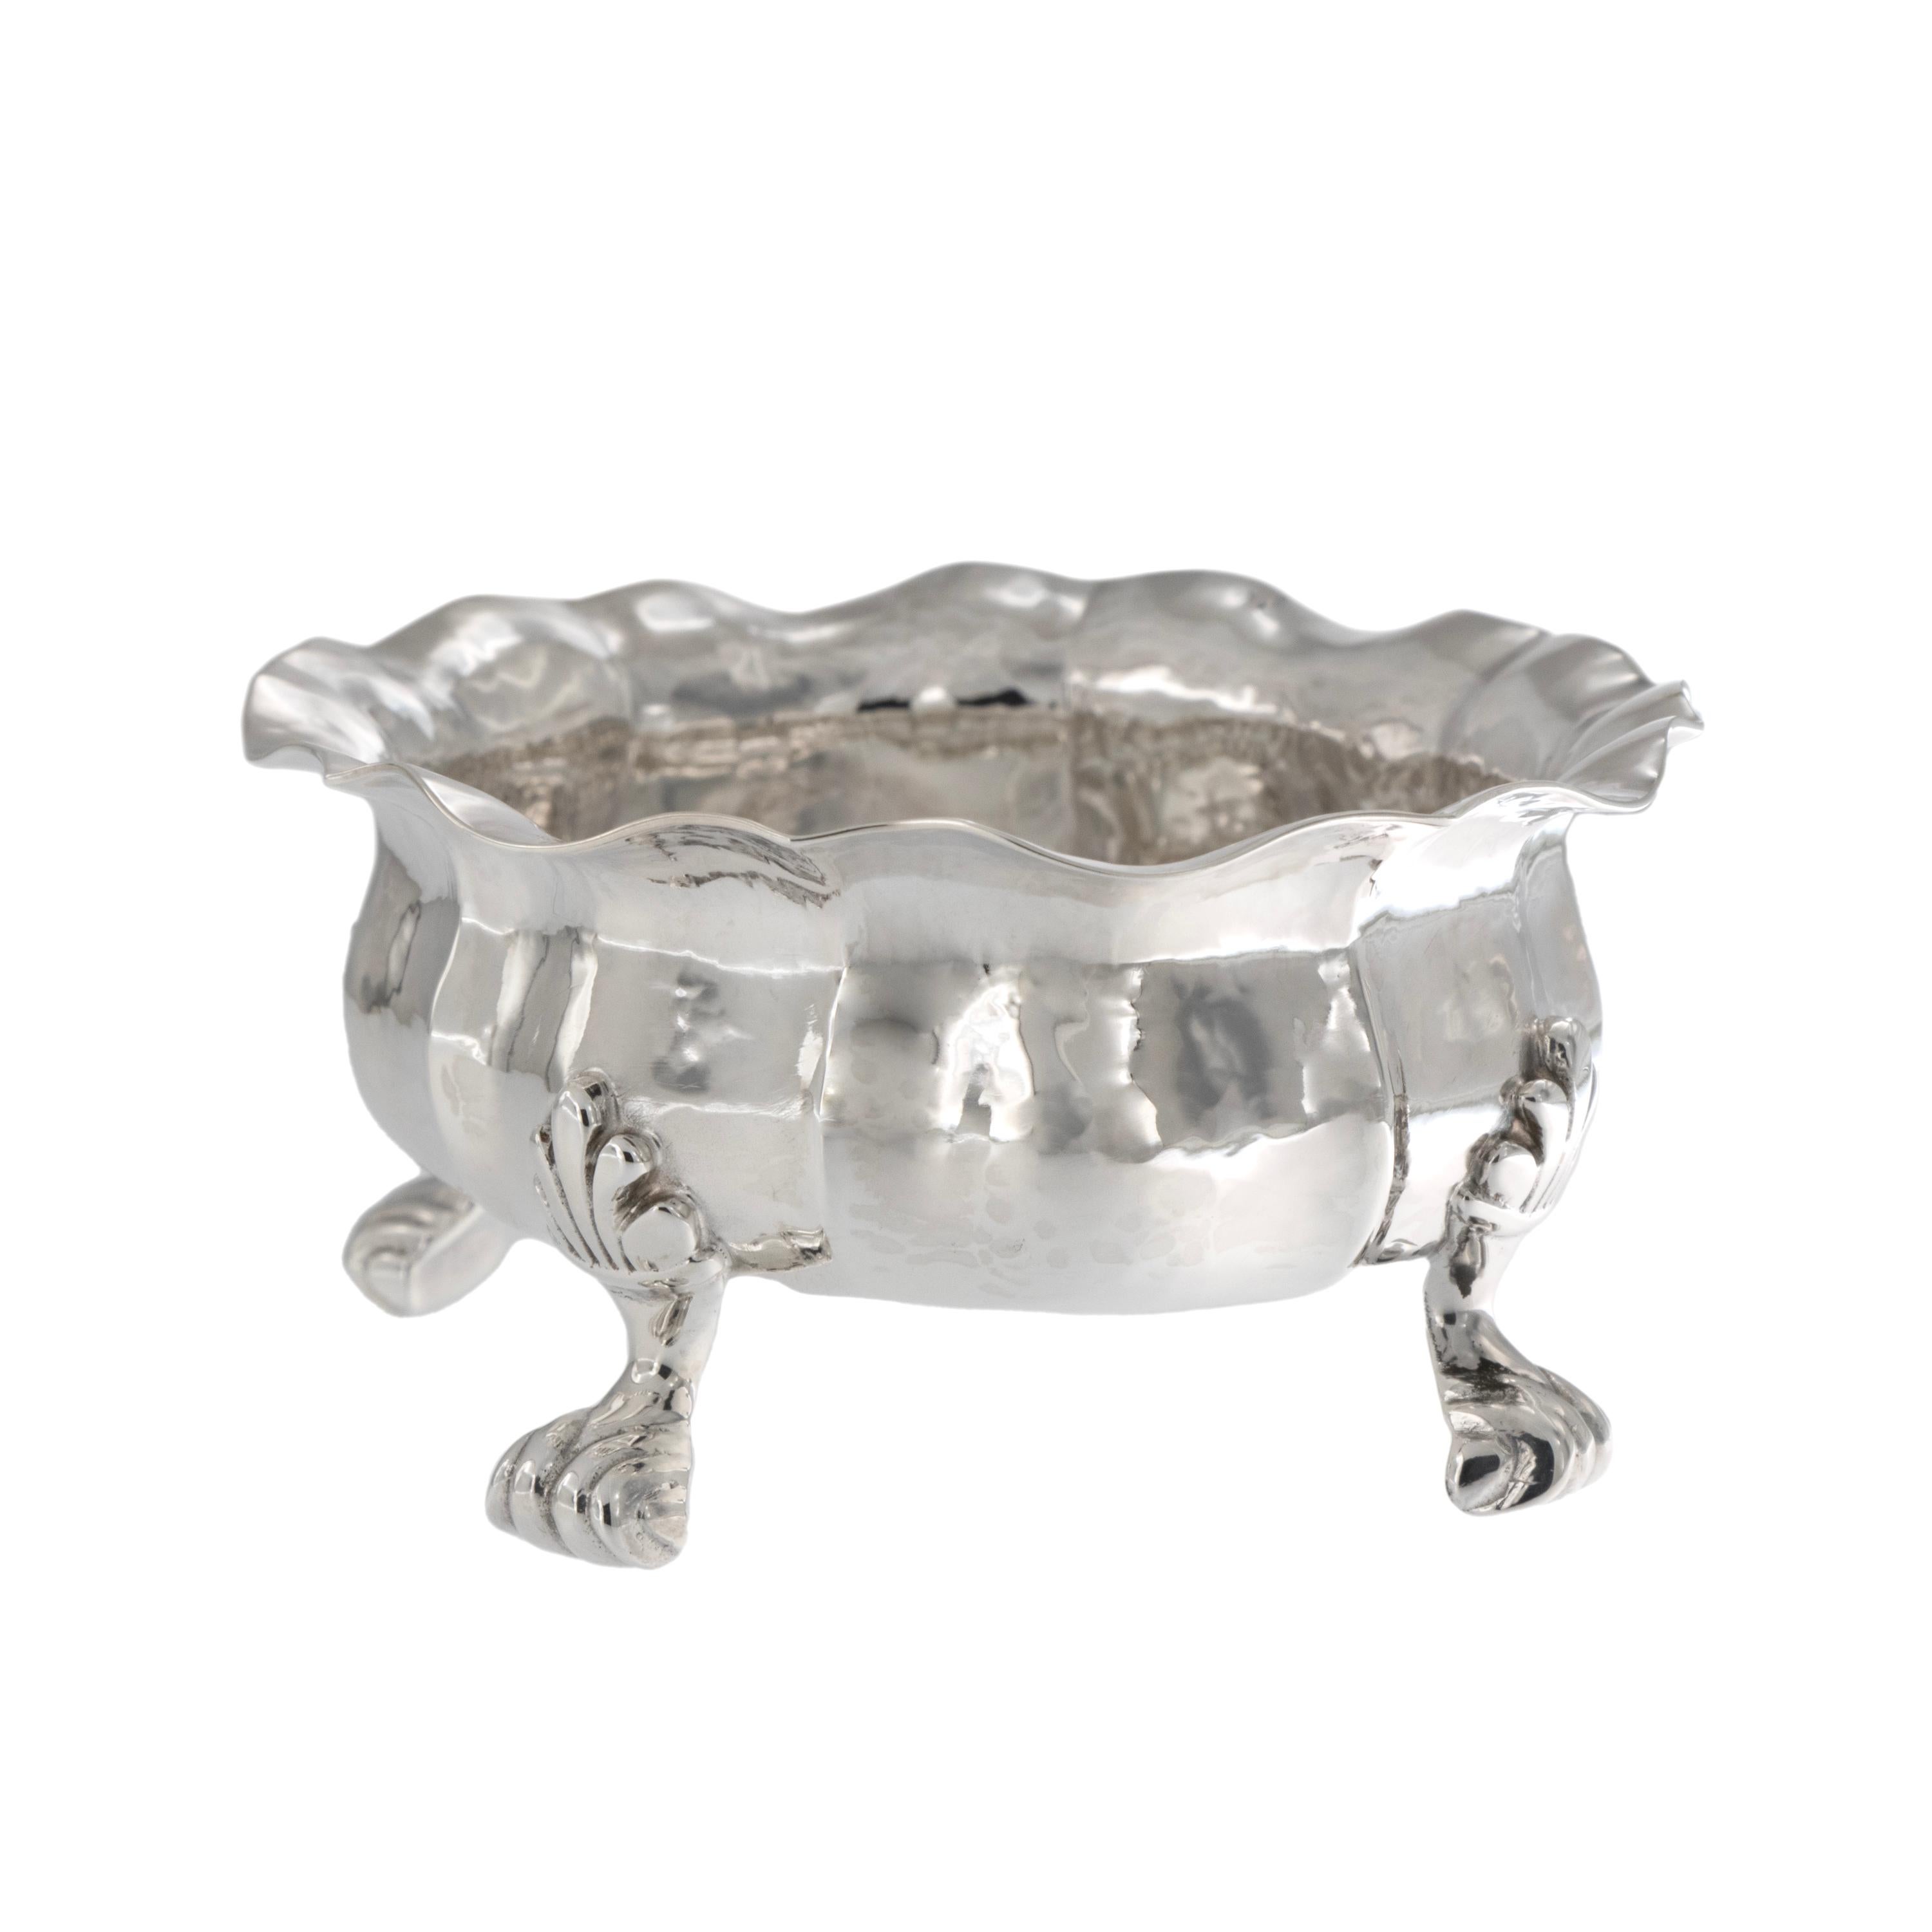 Famed for jewelry and silver since mid-18th century, Buccellati produit toujours dans de petits ateliers avec des artisans qualifiés considérés comme les meilleurs d'Italie. Ce bol à pied en argent sterling martelé à la main avec cuillère a été